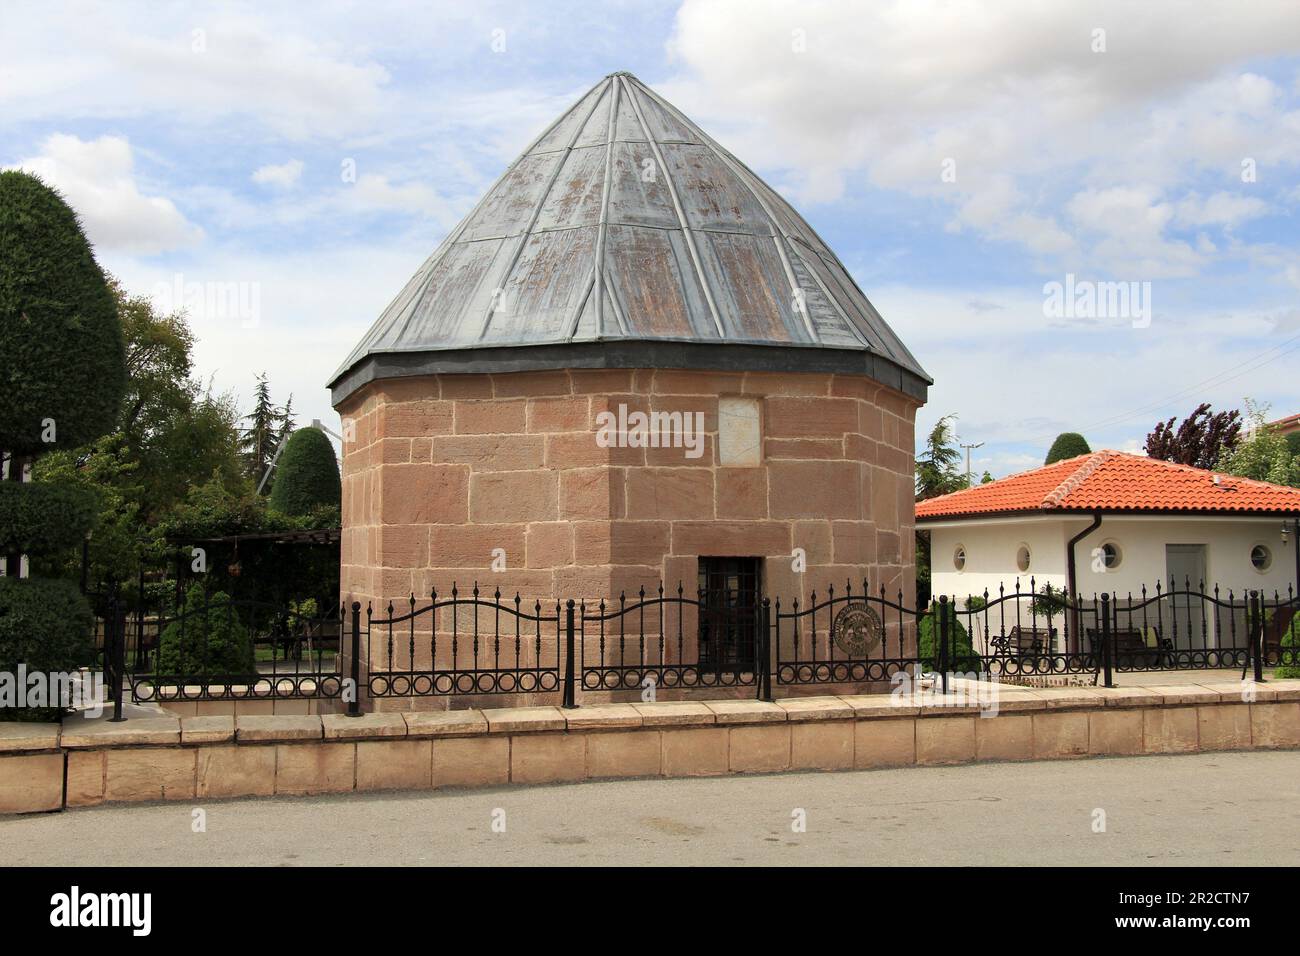 Le tombeau d'Atesbaz Veli a été construit pendant la période anatolienne de Seljuk. Le tombeau du cuisinier de Mevlana Celaleddin Rumi est situé dans le tombeau. Banque D'Images